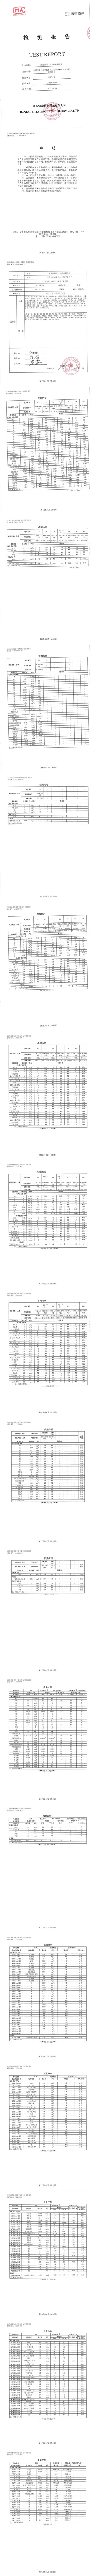 南通凱塔化工科技有限公司(地下水土壤監測報告)